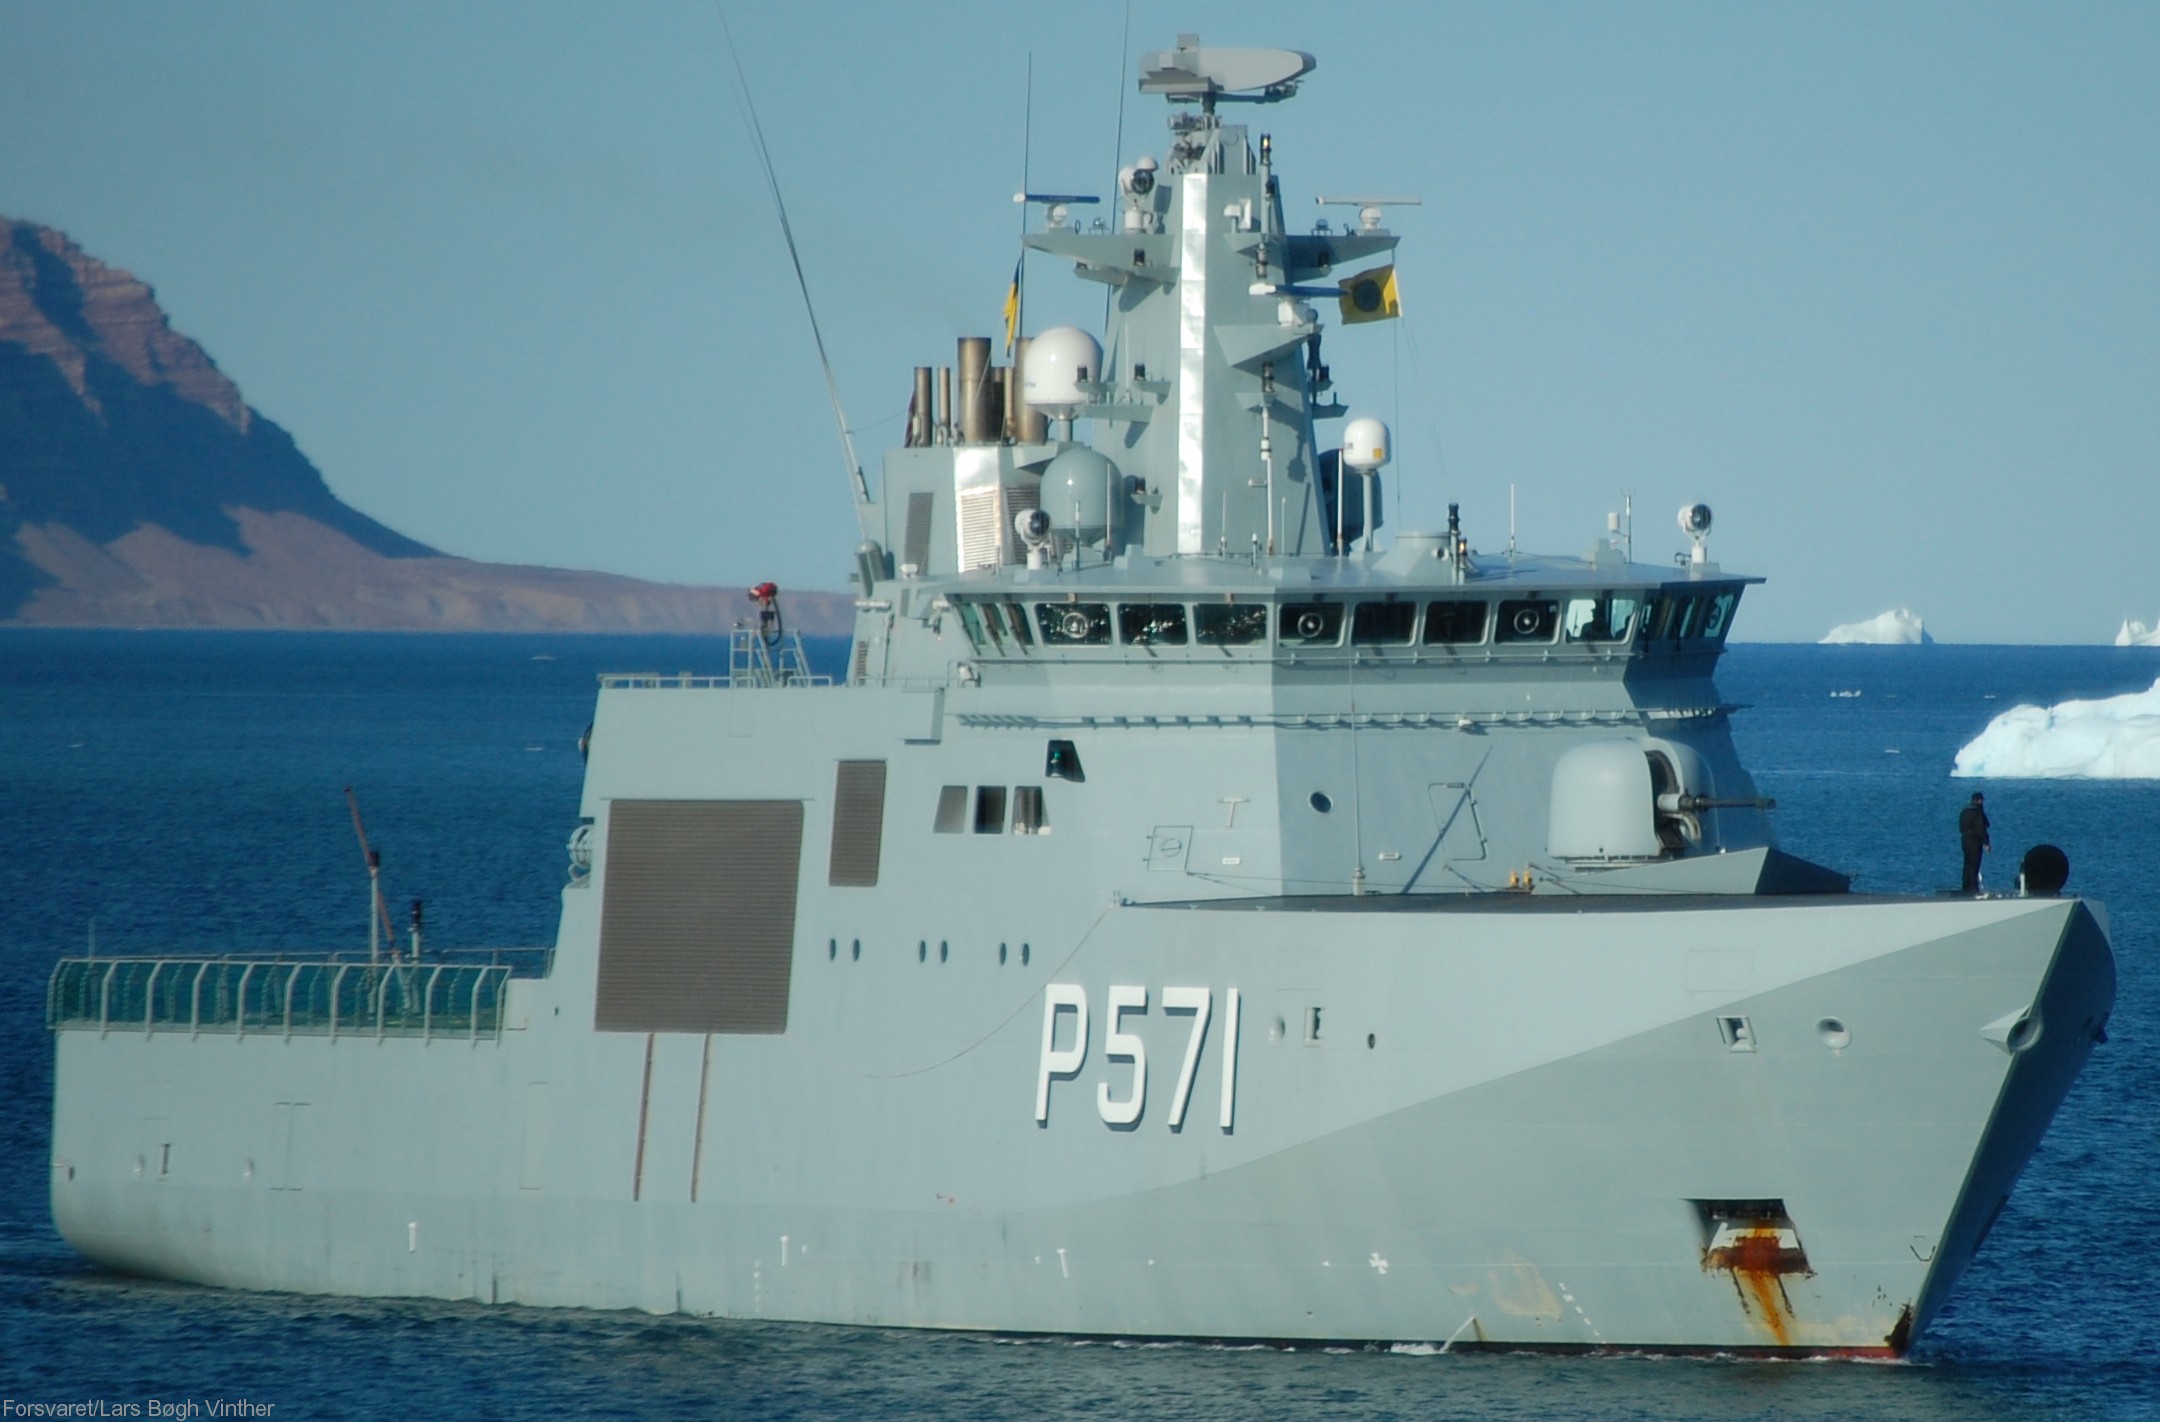 p-571 hdms ejnar mikkelsen knud rasmussen class offshore patrol vessel opv royal danish navy inspektionsfartøj 35x kongelige danske marine